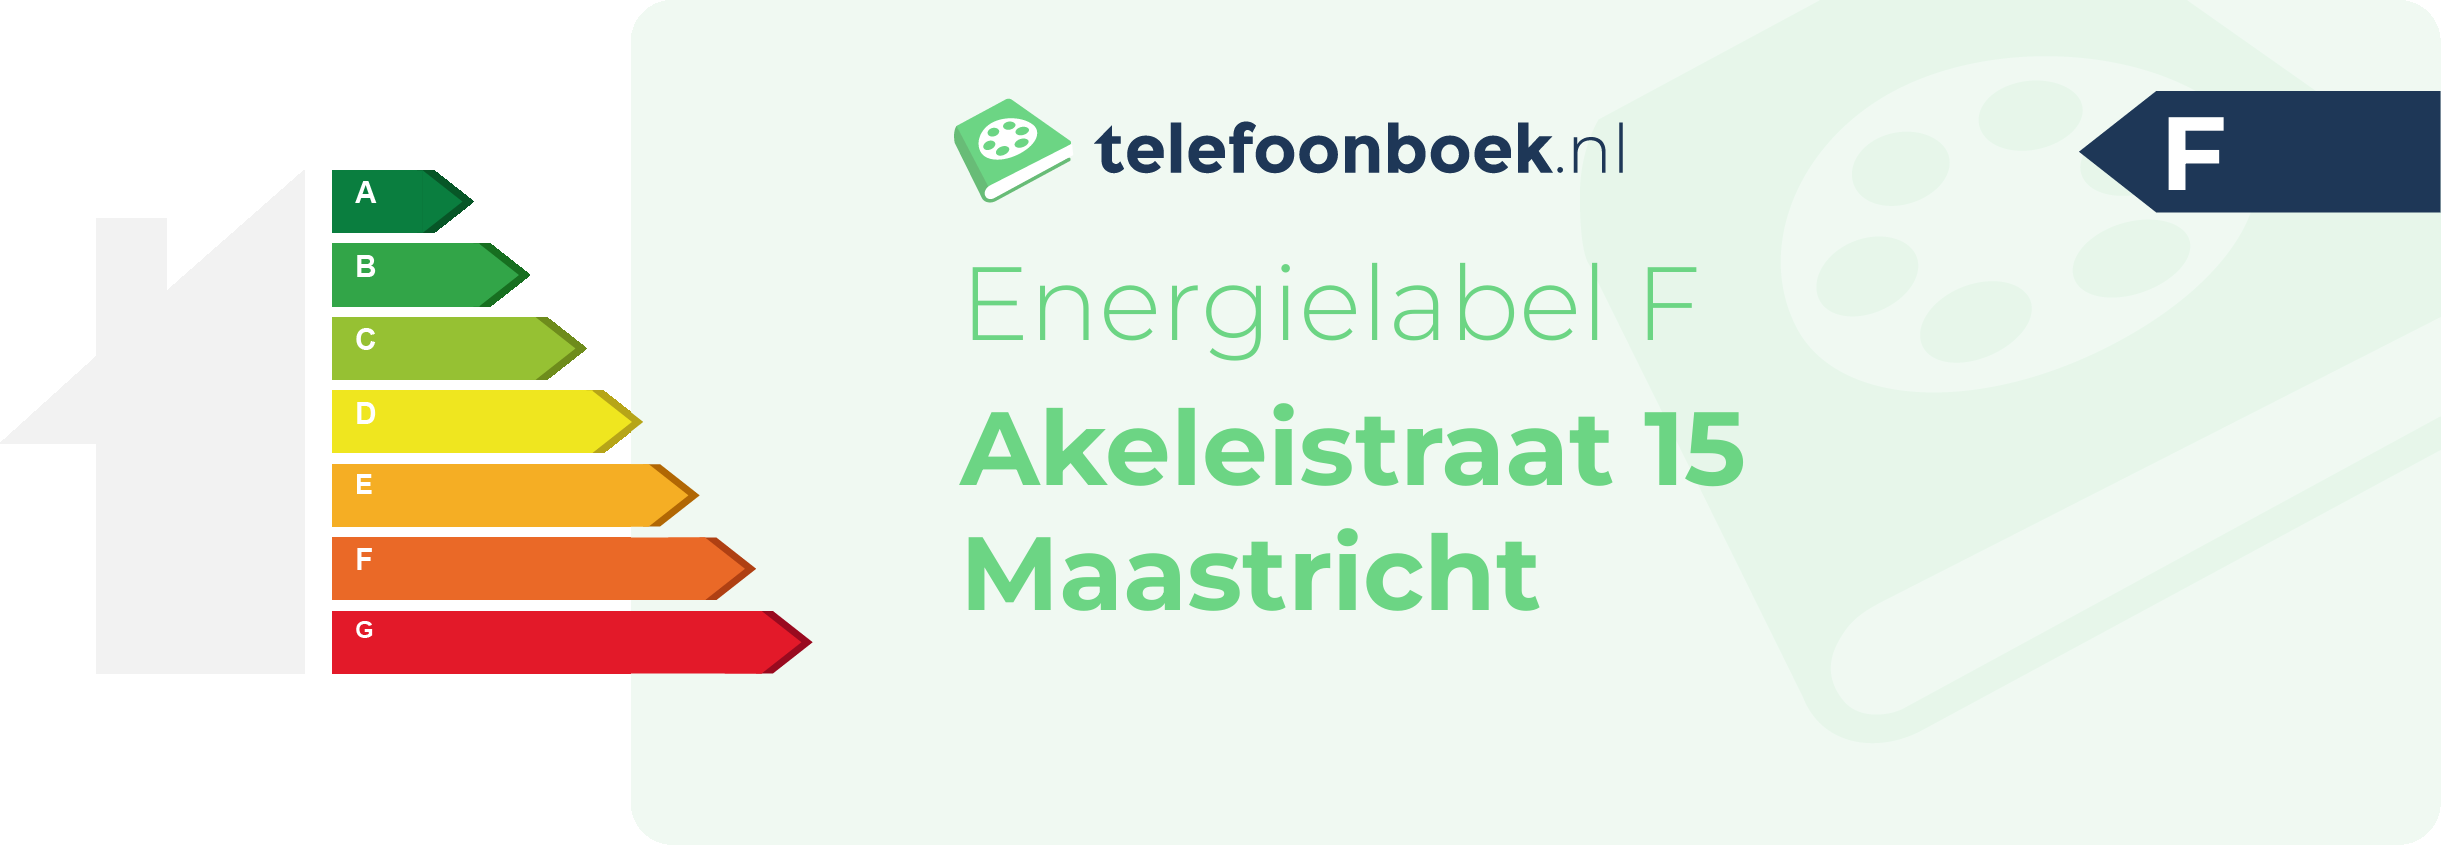 Energielabel Akeleistraat 15 Maastricht